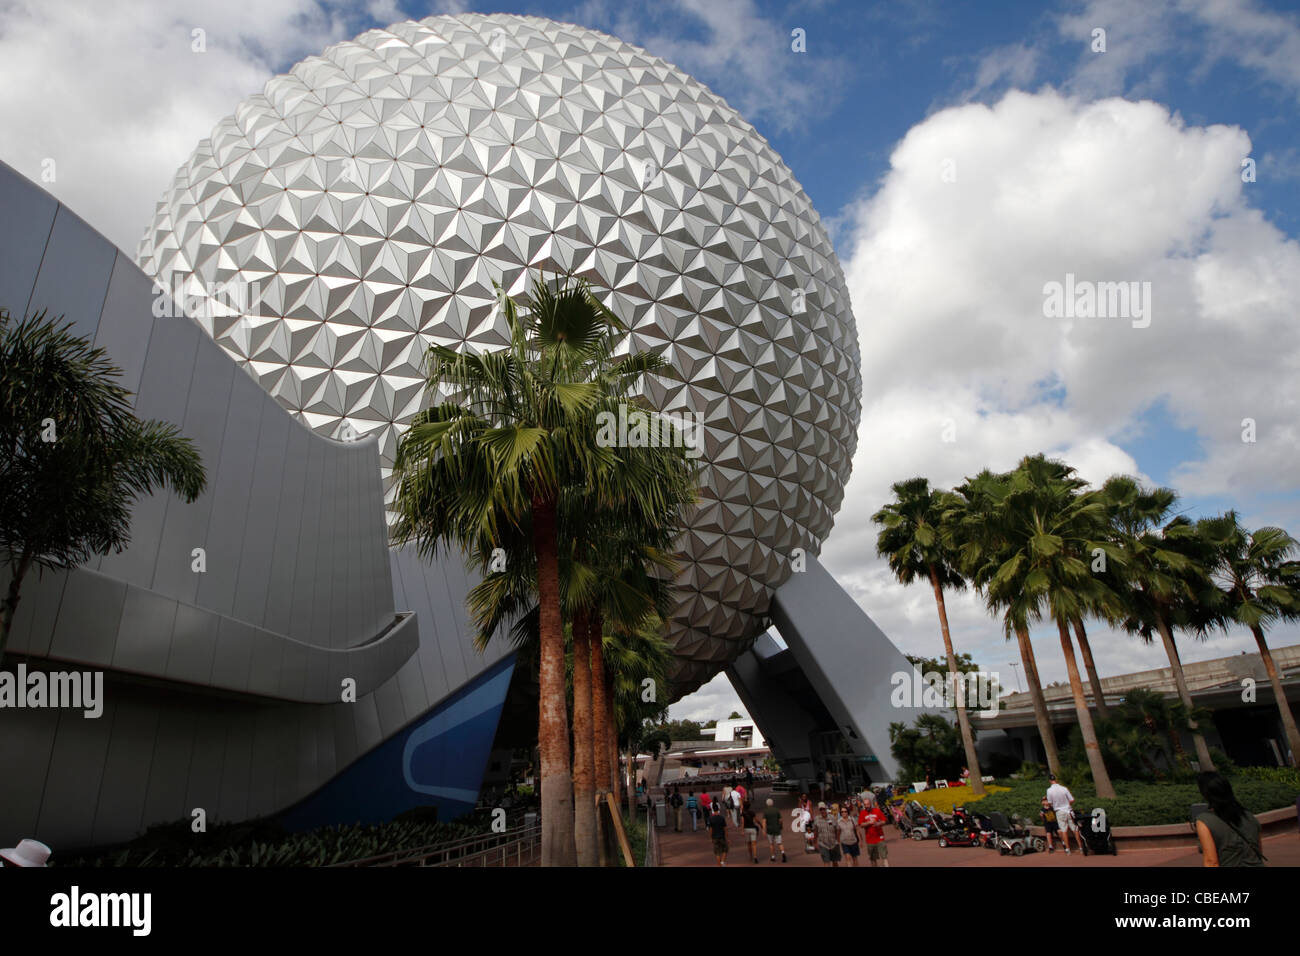 Le Globe, Epcot Spaceship Earth, Disneyworld, Orlando, Floride Banque D'Images